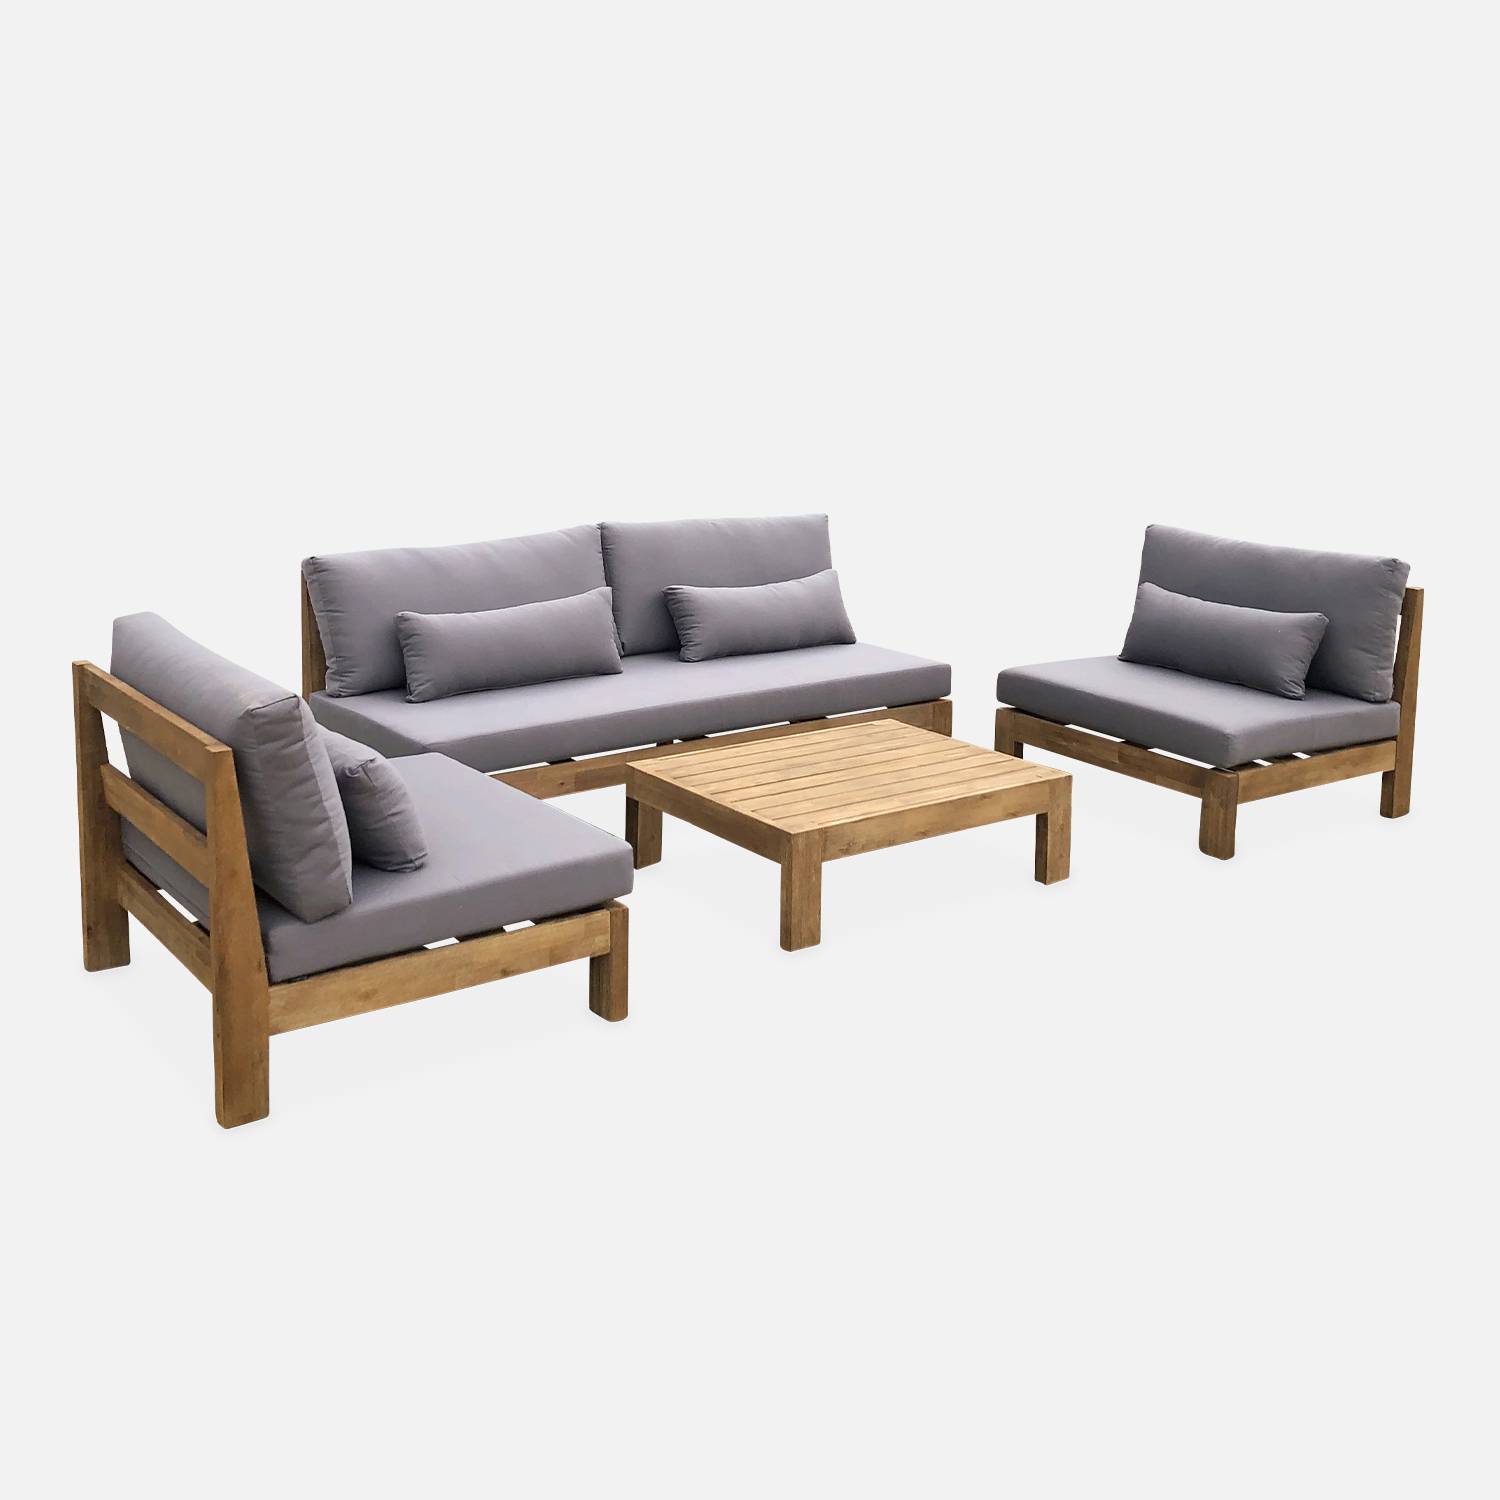 Set di mobili da giardino XXL in legno spazzolato, effetto sbiancato - BAHIA - cuscini antracite, ultra confortevoli, da 5 a 7 posti a sedere Photo2